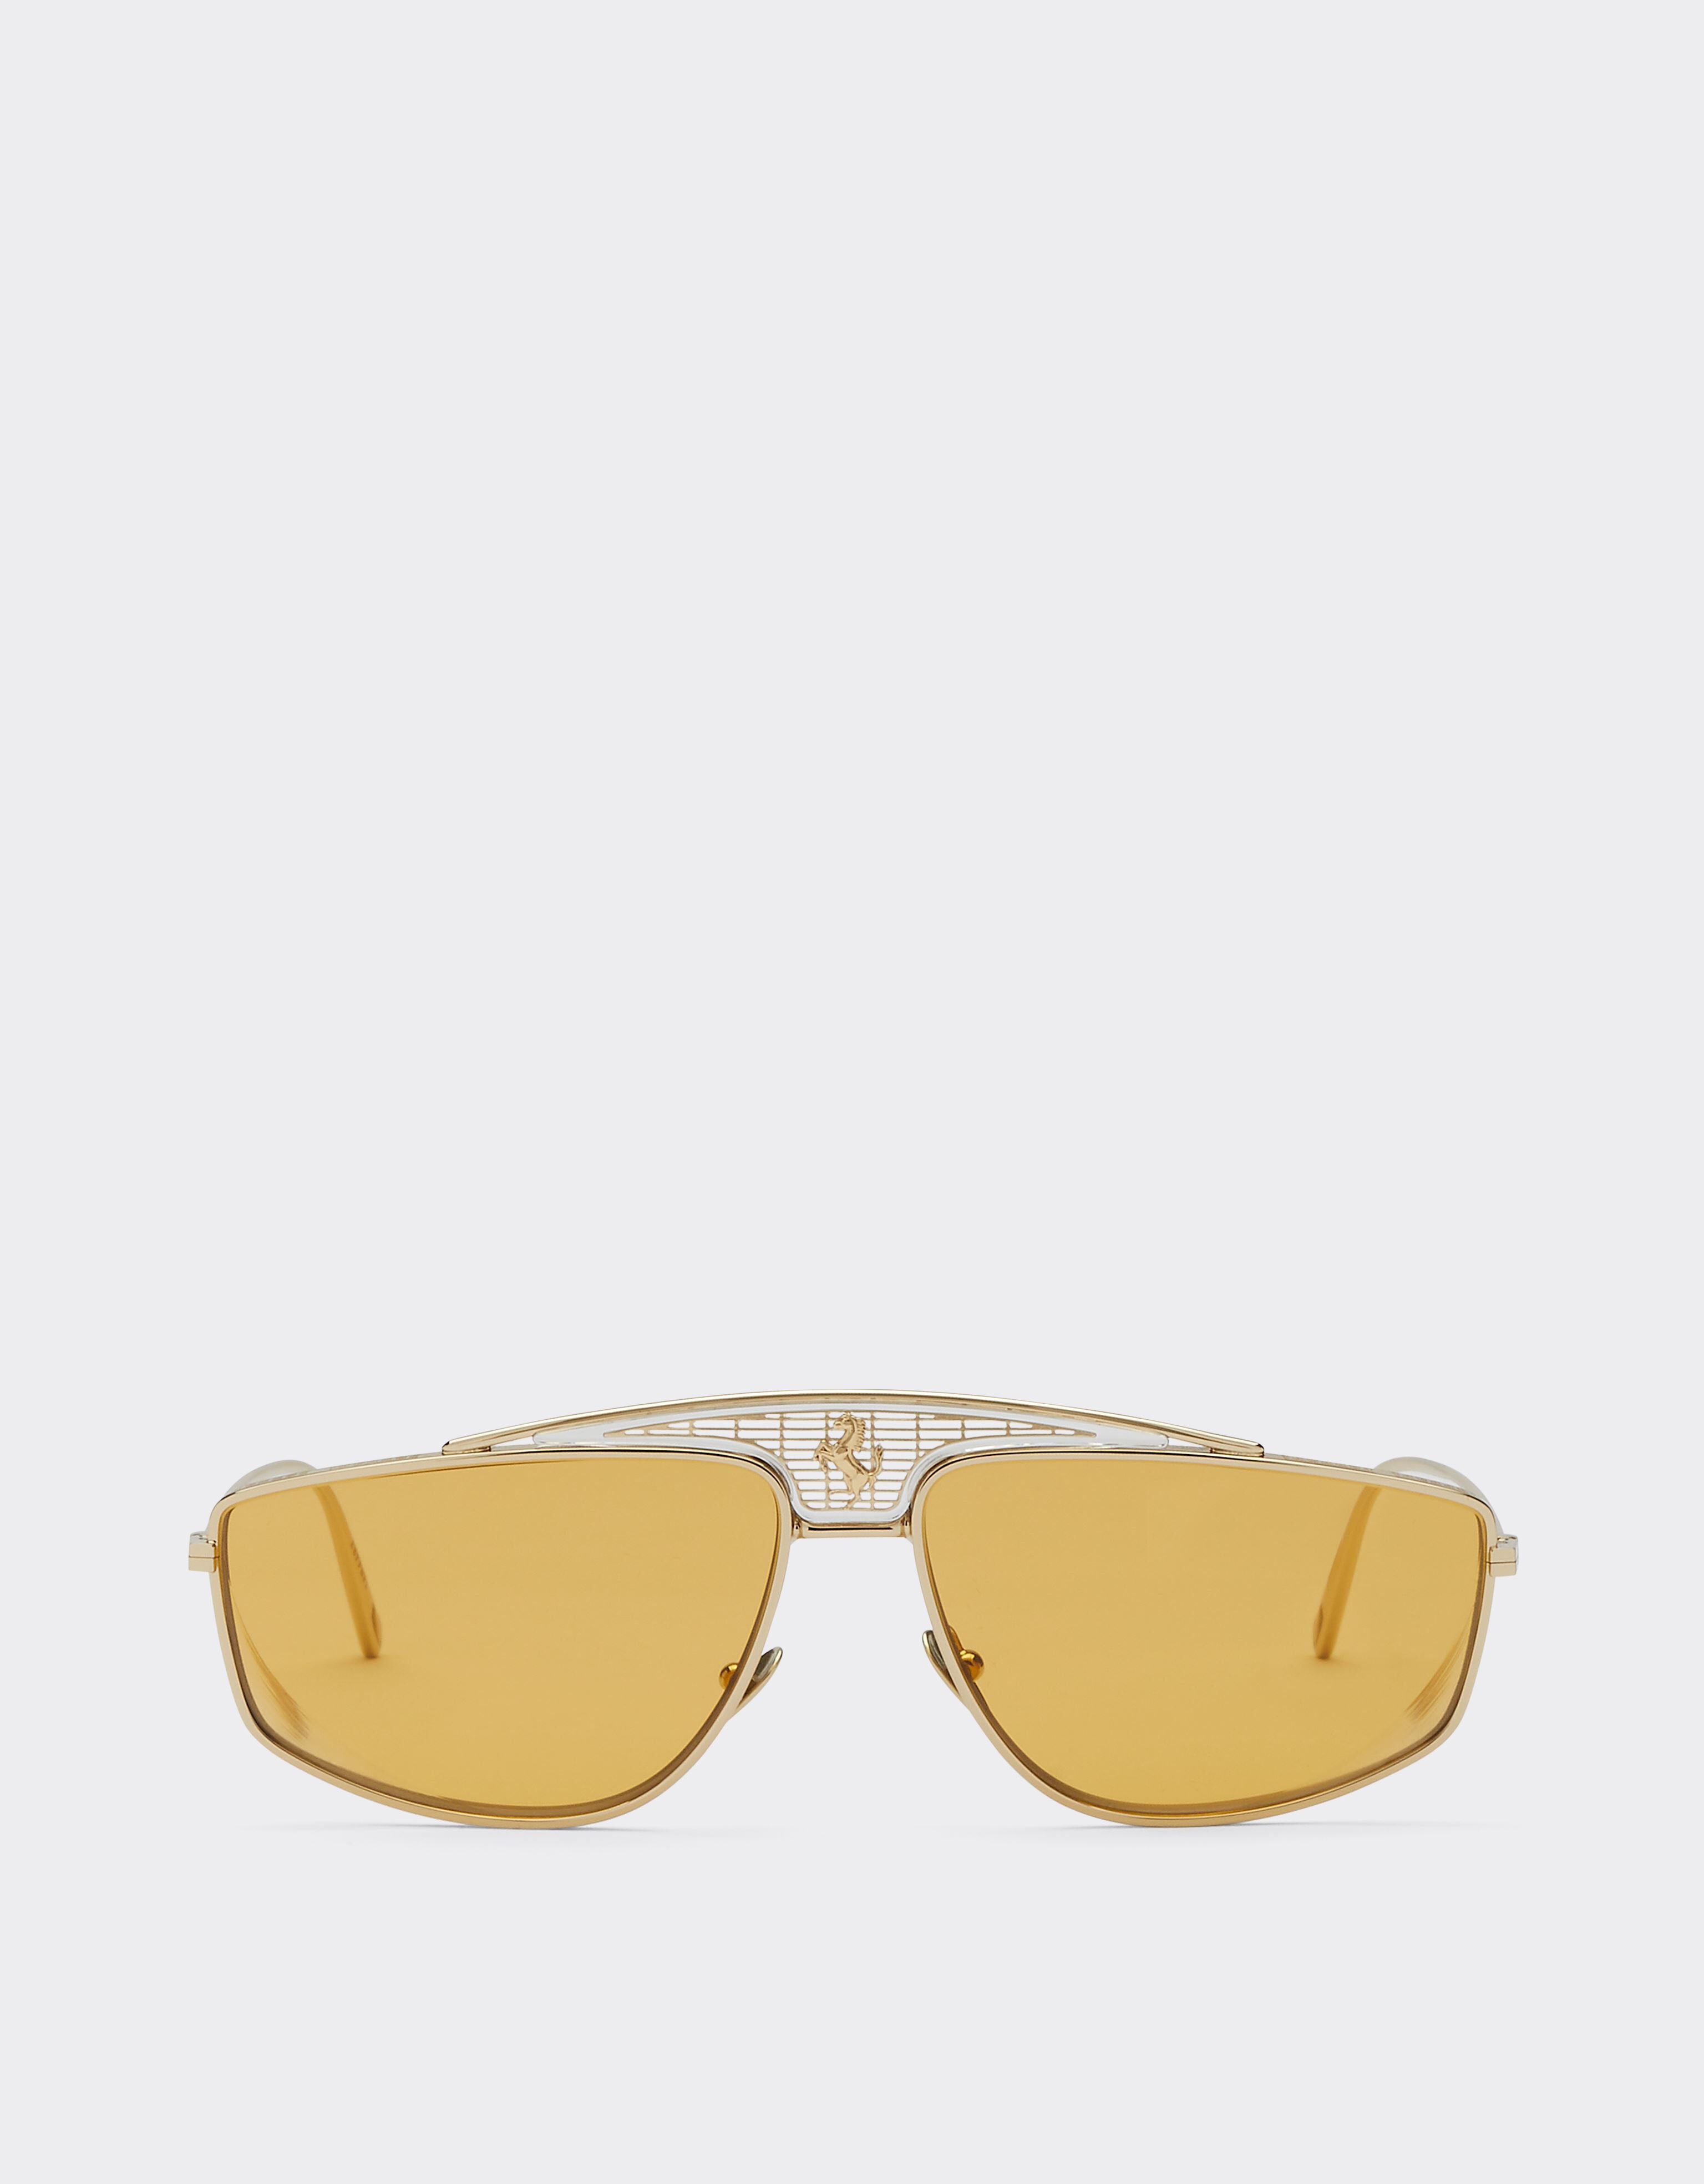 Ferrari Ferrari sunglasses with yellow lenses Black Matt F1250f